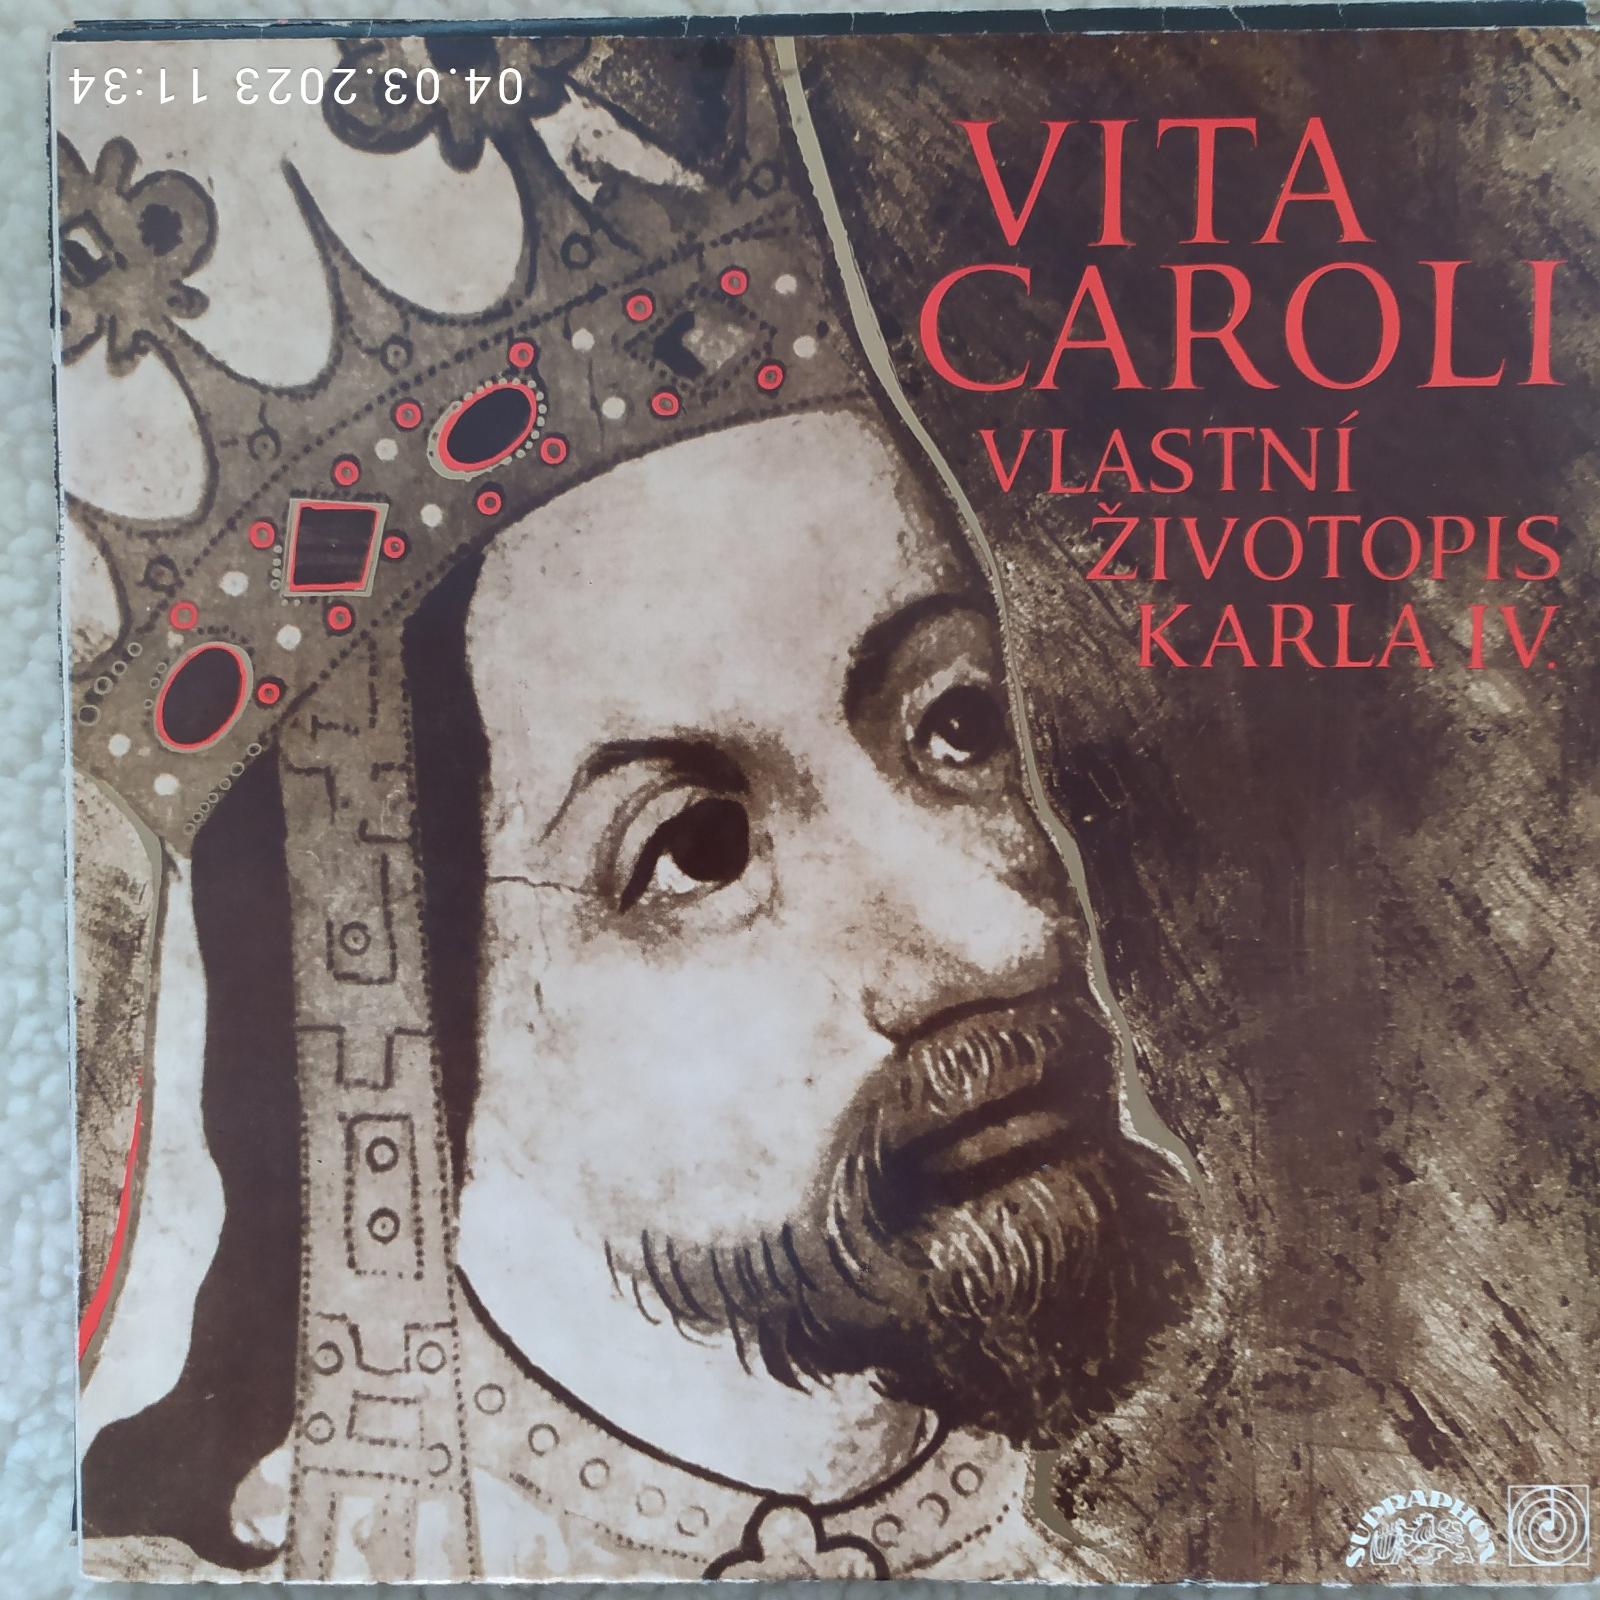 LP-Vinyl VITA CAROLI životopis Karola IV - Hudba